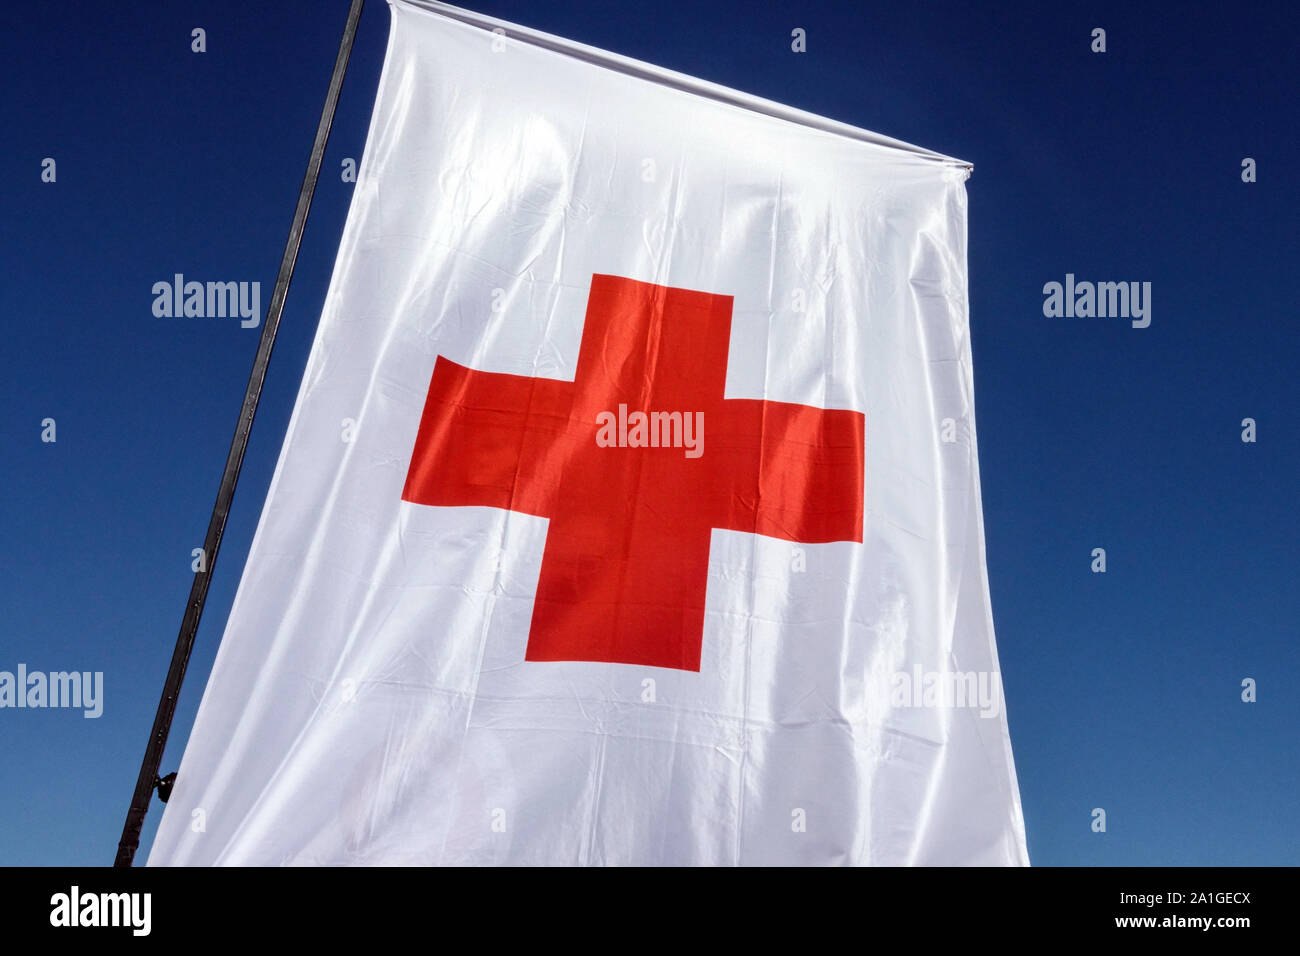 Mât de drapeau de croix rouge contre le ciel bleu Banque D'Images